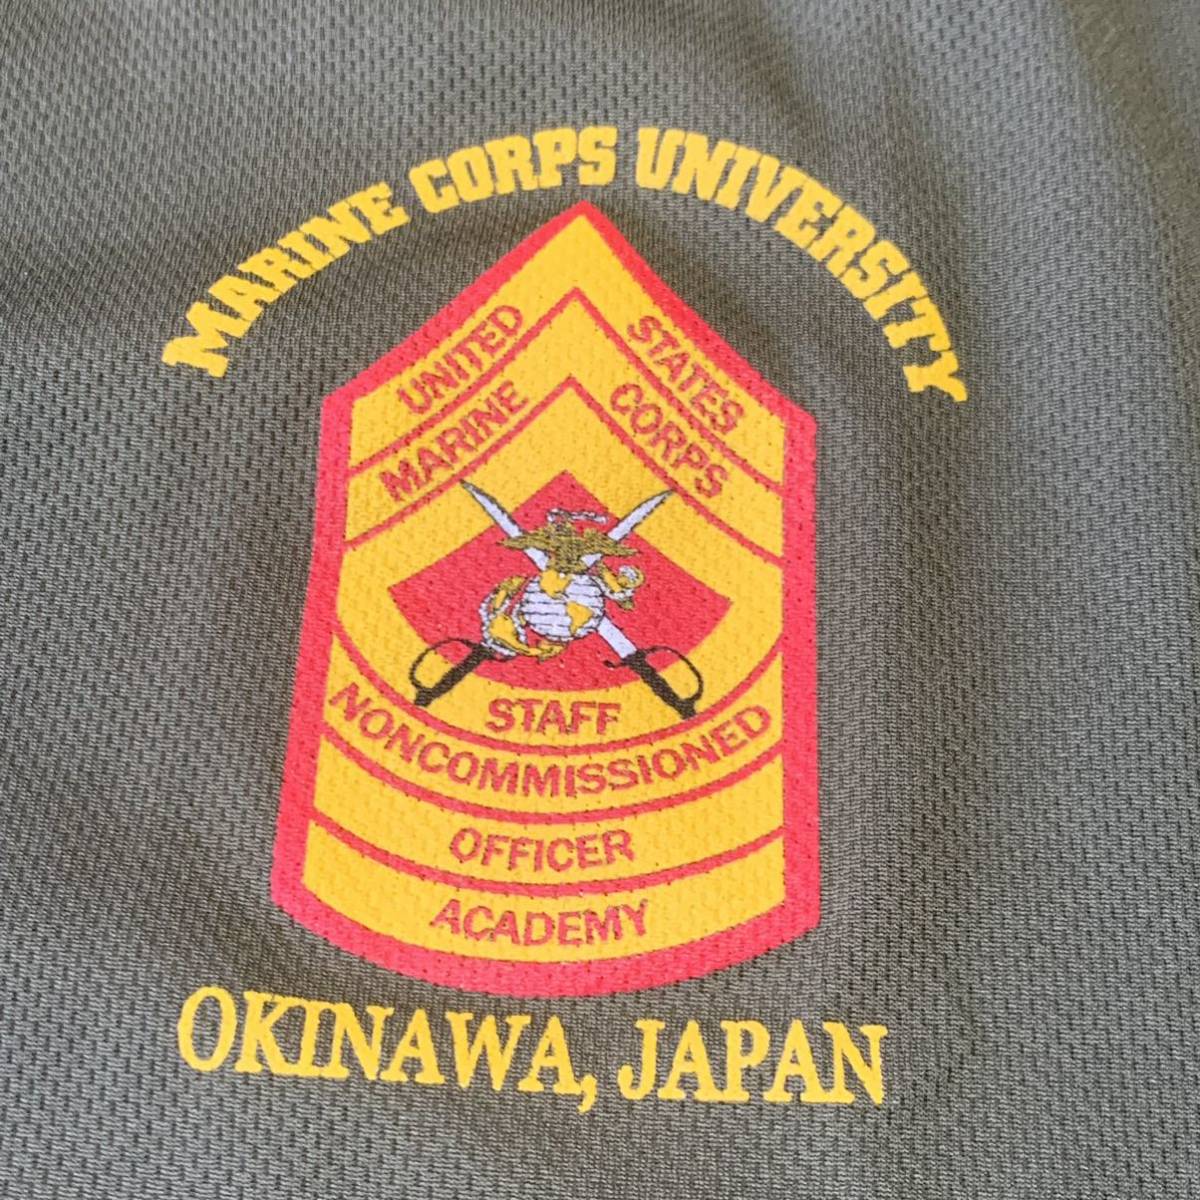  Okinawa вооруженные силы США сброшенный товар USMC MARINE милитари футболка тренировка бег .tore спорт OD MEDIUM ( контрольный номер NO5)